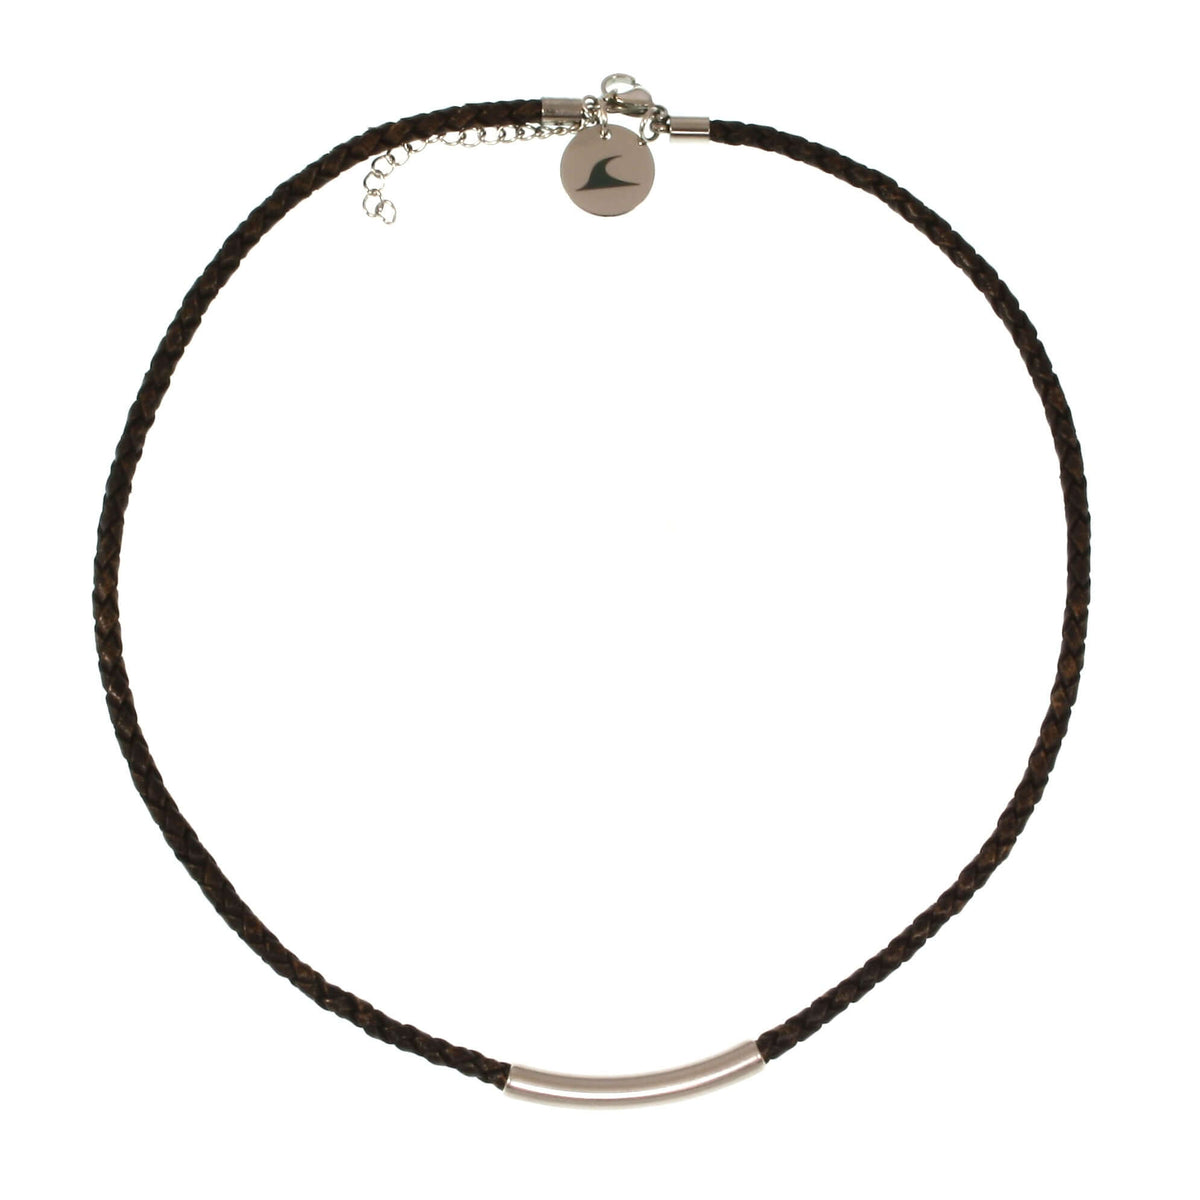 Damen-Leder-halskette-curve-Braun-geflochten-Edelstahlverschluss-vorn-wavepirate-shop-f